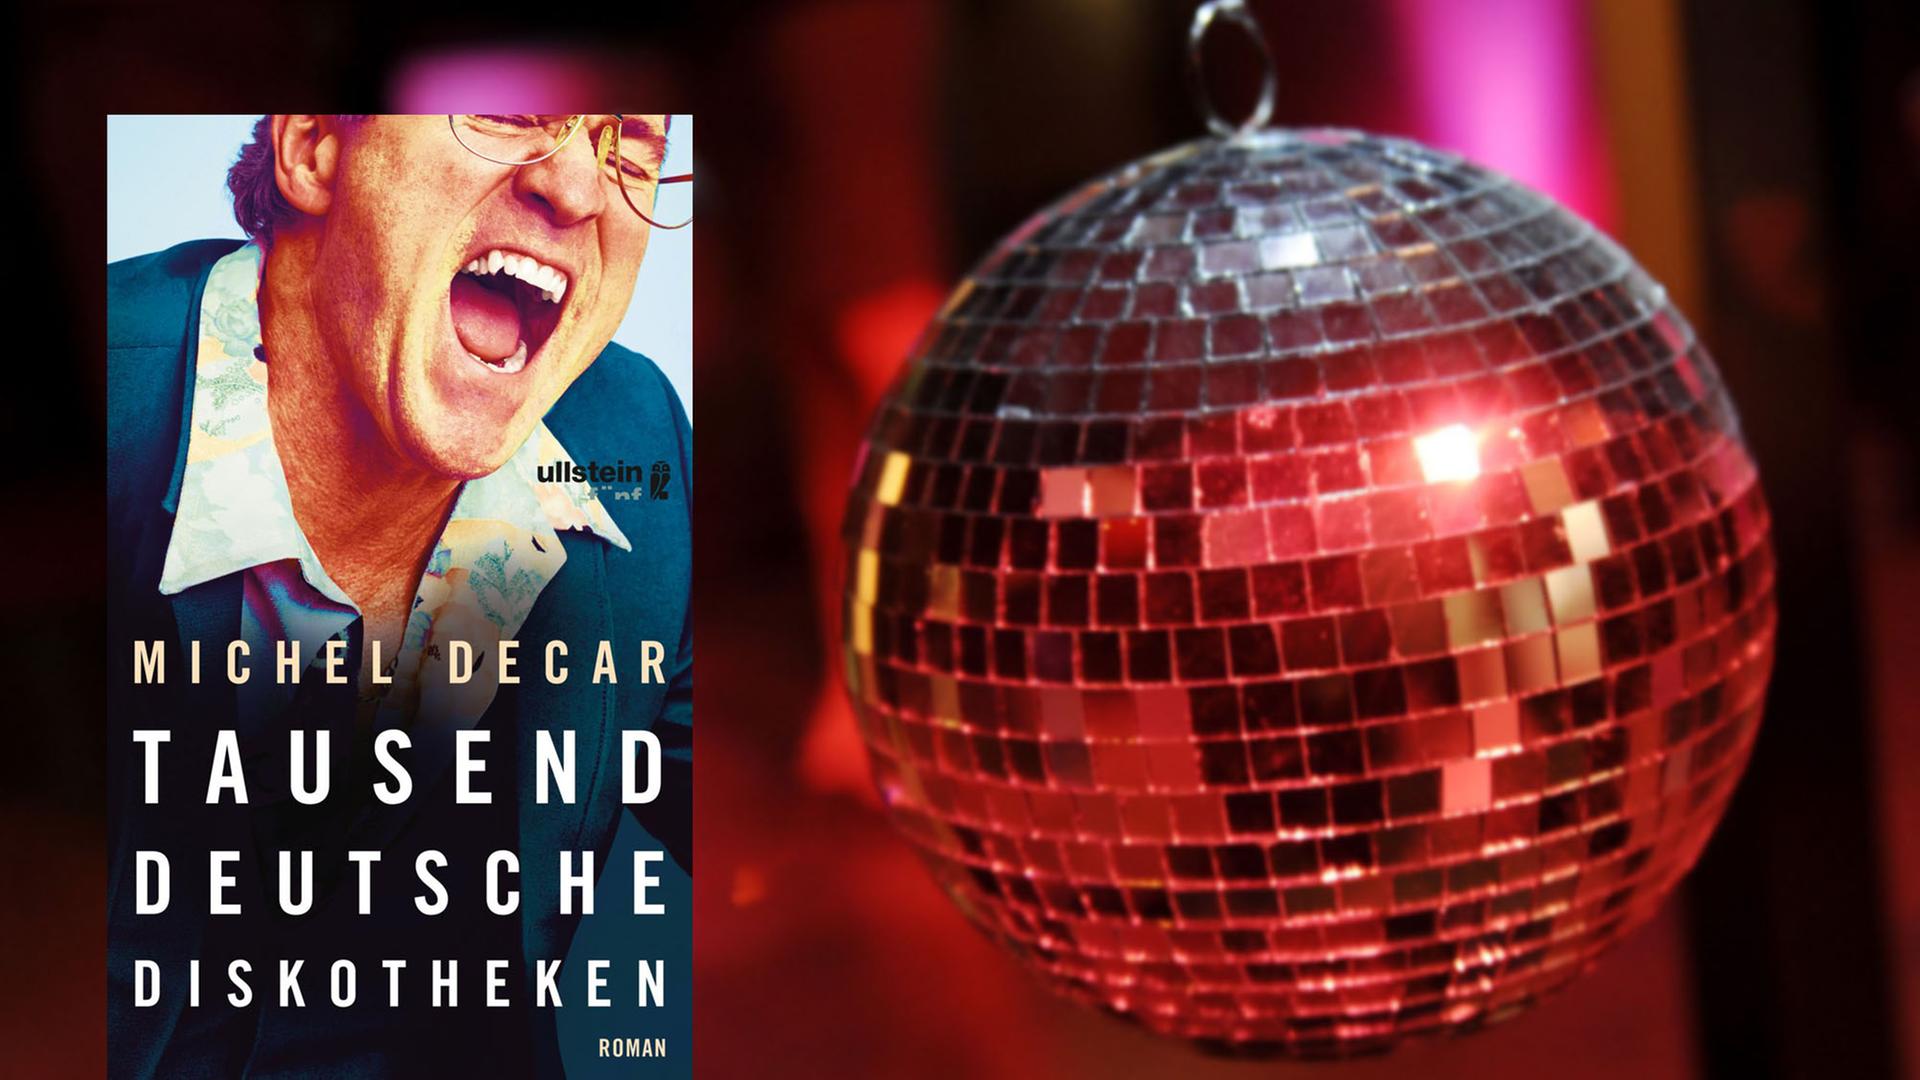 Cover von Michel Decars "Tausend deutsche Diskotheken", im Hintergrund ist eine Diskokugel zu sehen